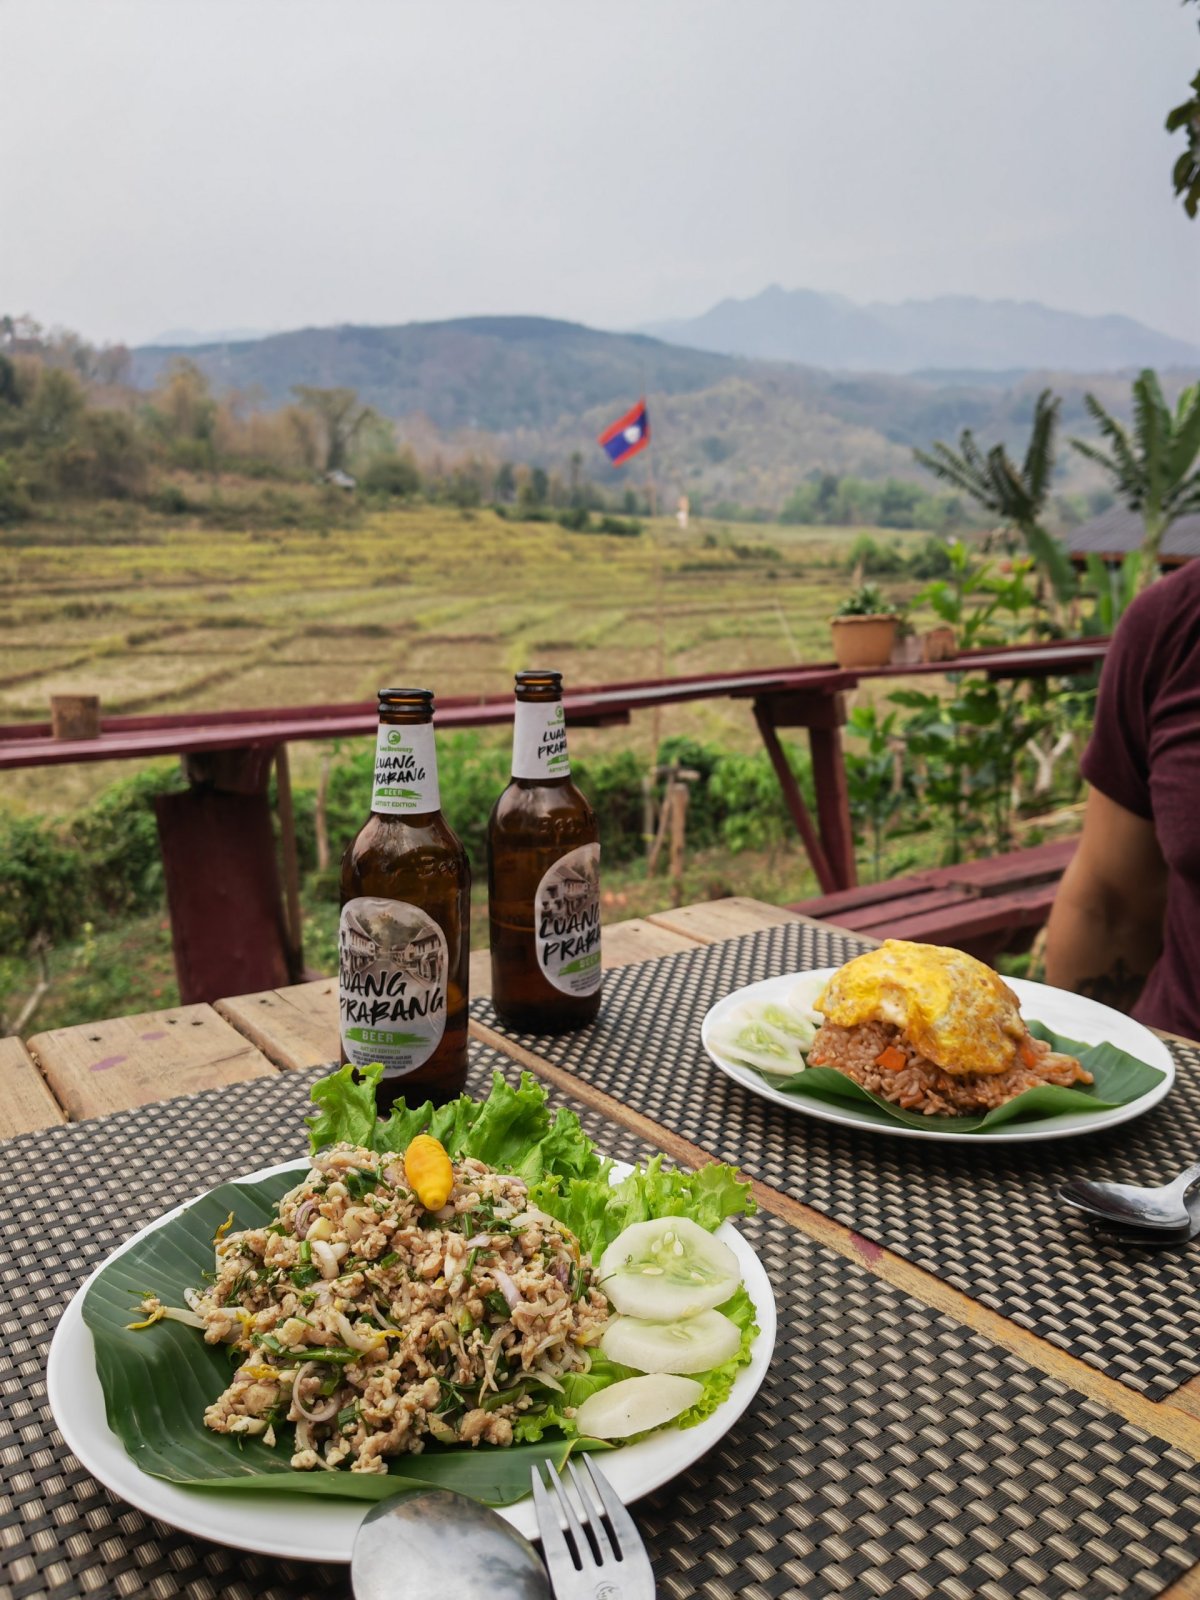 Laos jak ho máme rádi, larp, smažená rýže a výborné pivo